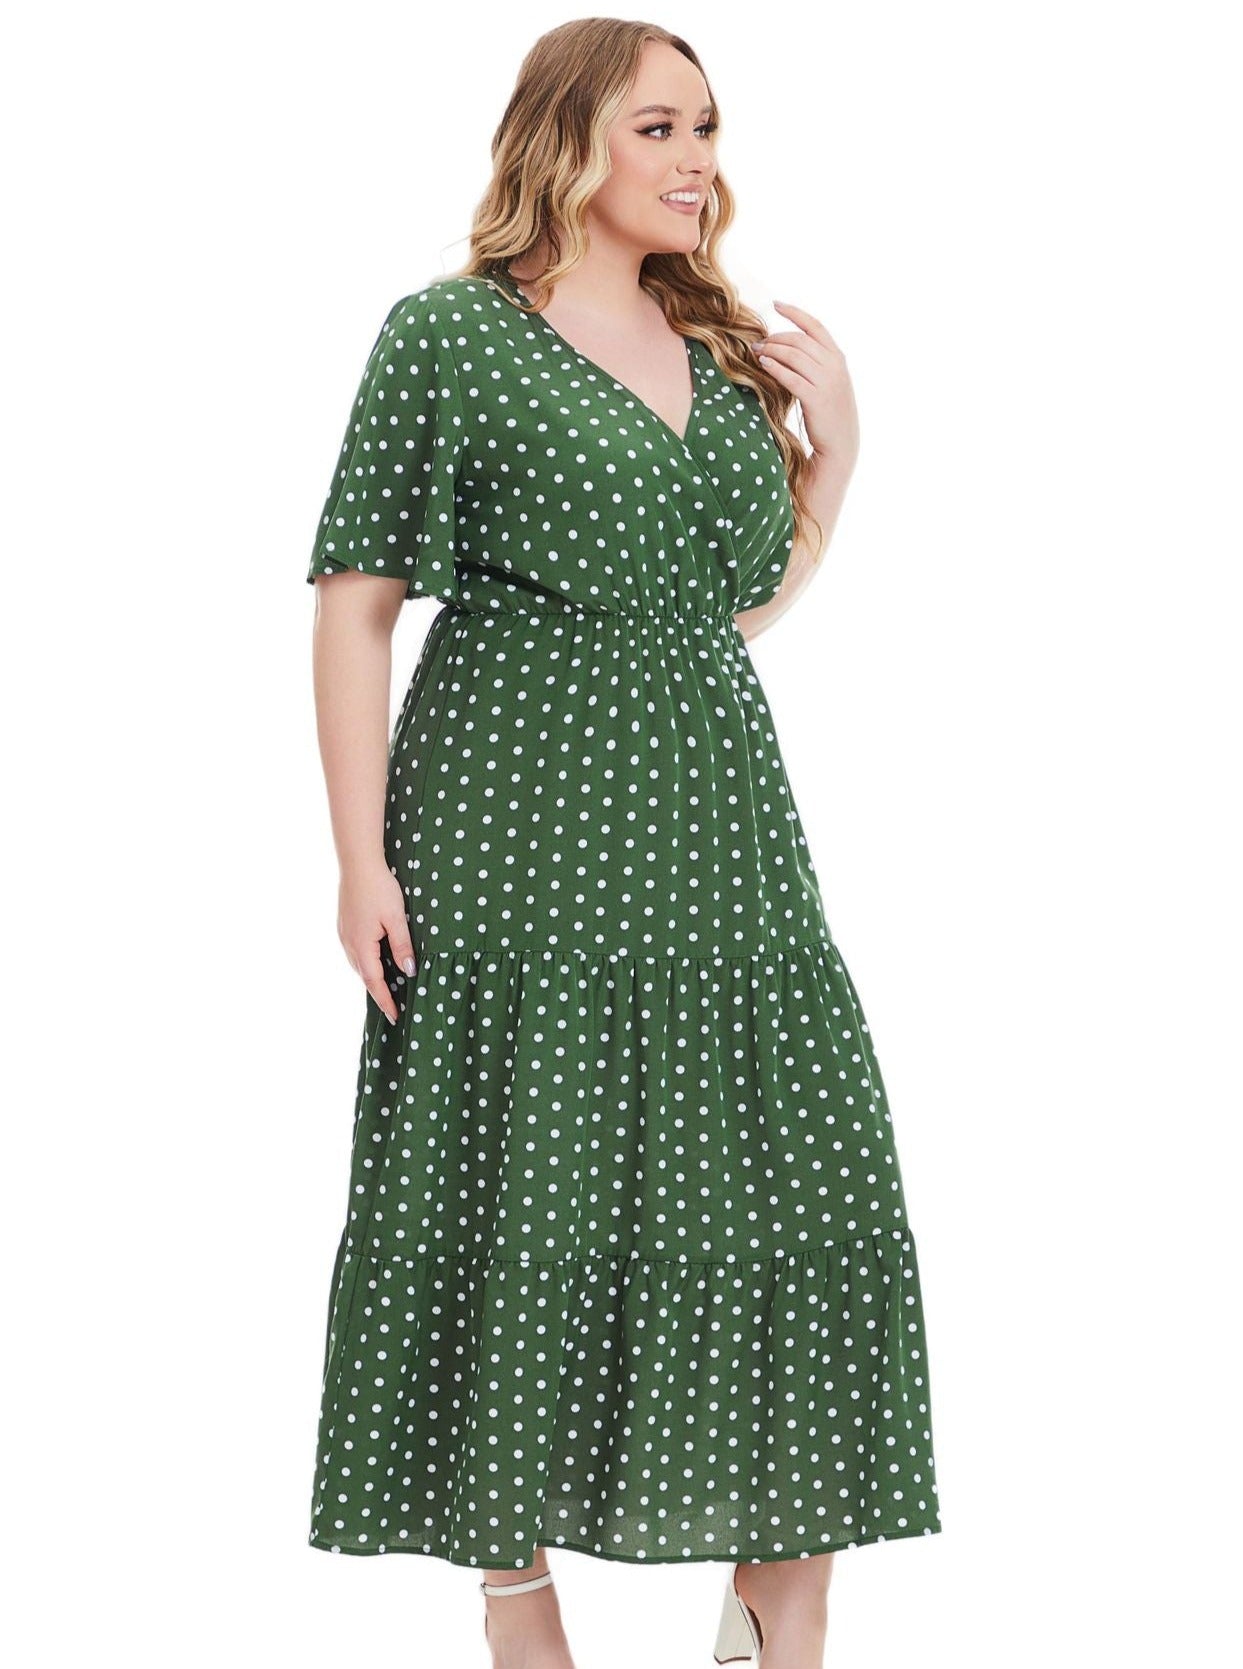 Plus Size Grøn og hvid Polka Dots Kjole 